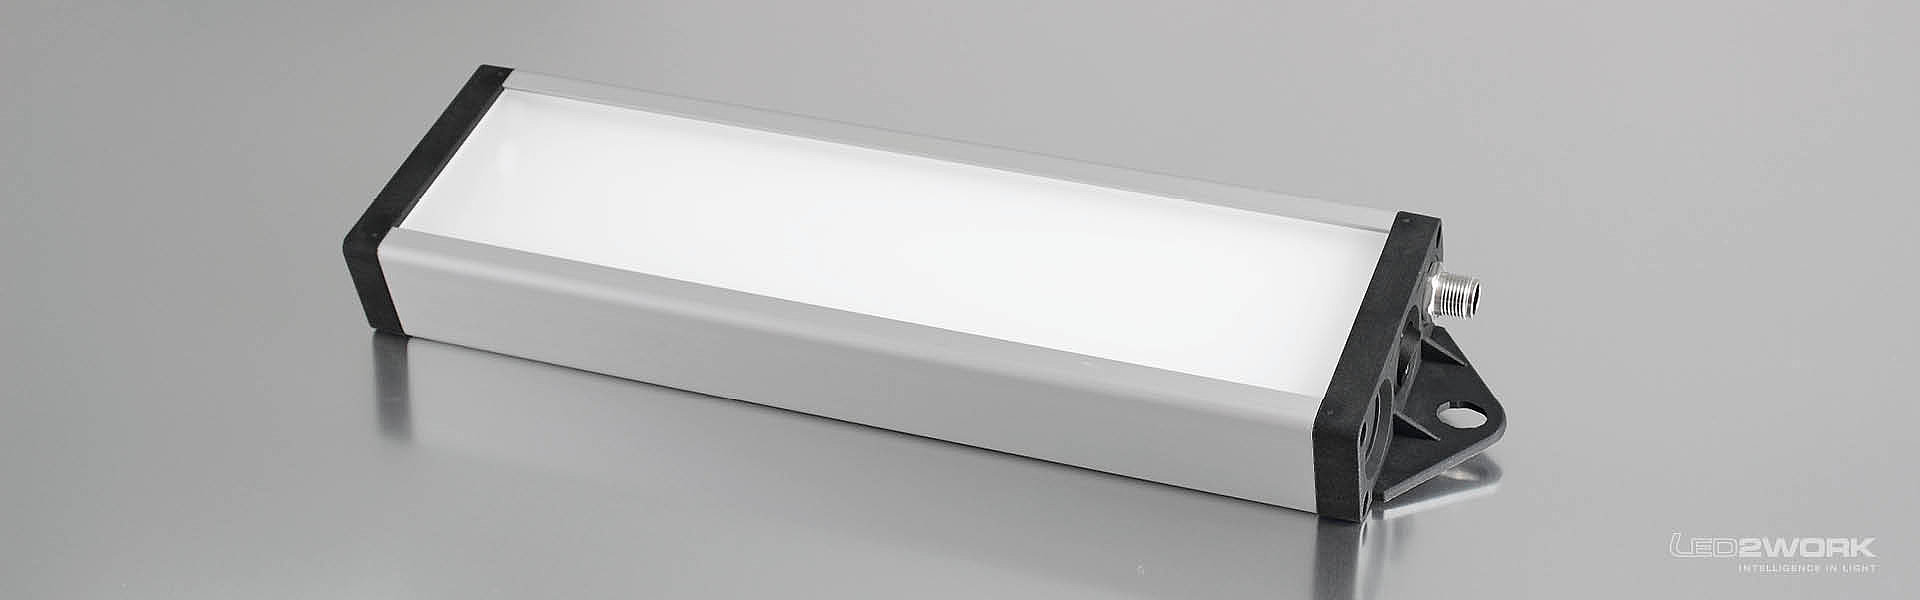 Ilustración de la luminaria LED de trabajo | luminaria LED de sistema | luminaria LED de señalización UNILED SL RGB-W de LED2WORK